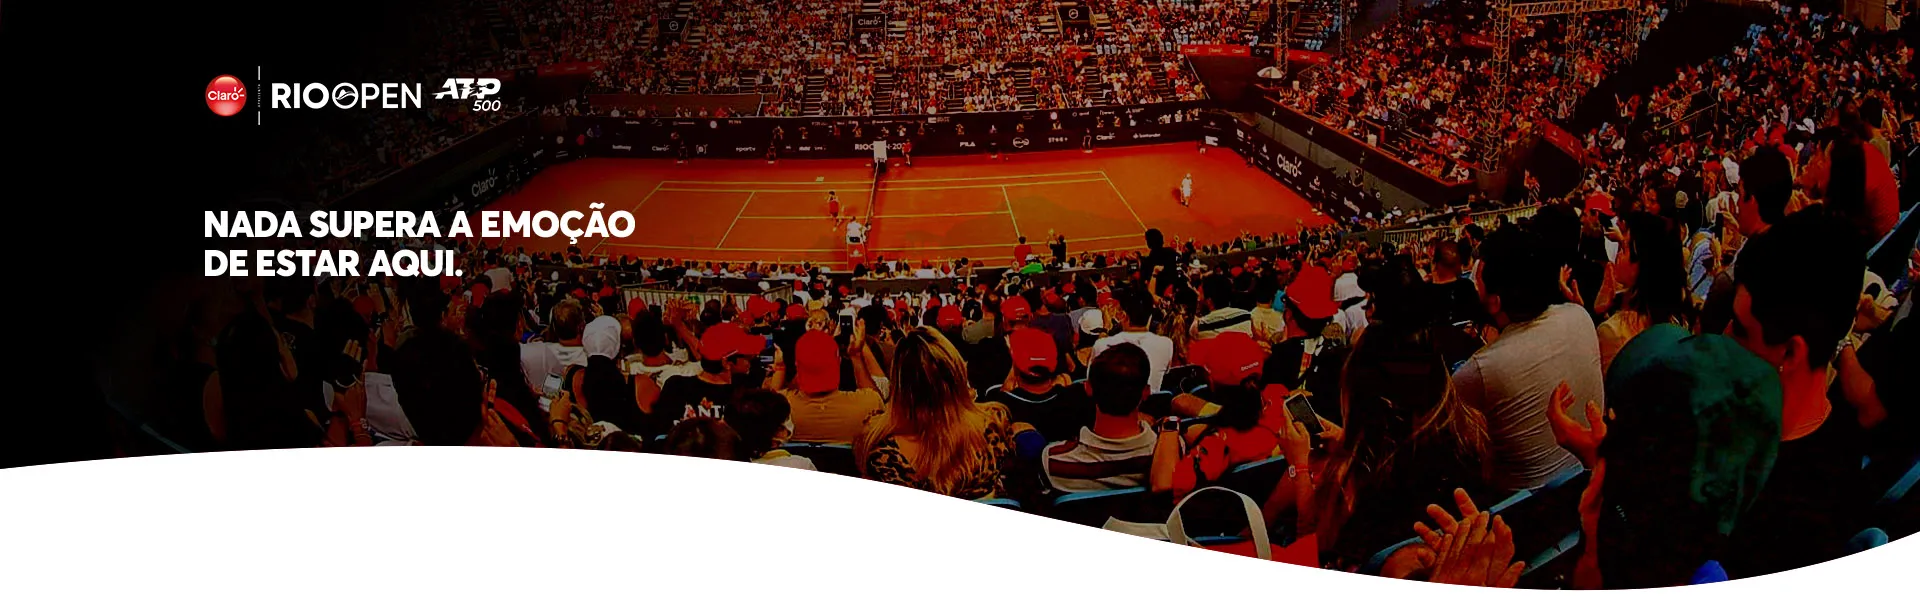 Imagem da torcida e partida de tênis Rio Open.